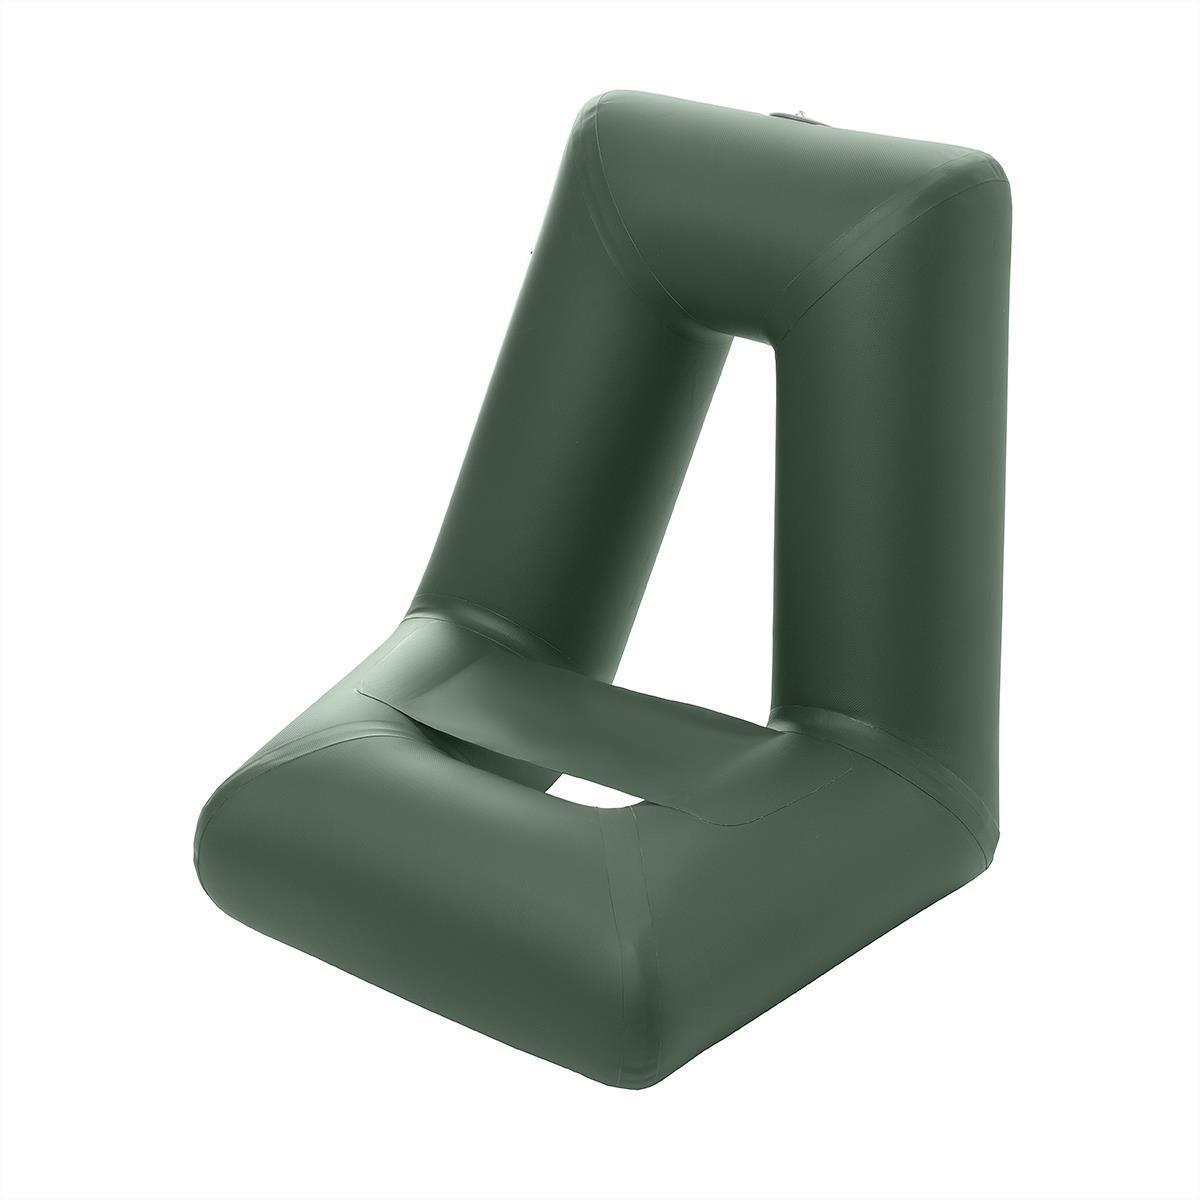 Сиденье надувное пвх. Кресло надувное (кн1) Тонар. Тонар кресло надувное кн-1 для надувных лодок. Кресло надувное кн-1 для надувных лодок (зеленый) Тонар. Кресло надувное для лодки Викинг 320.